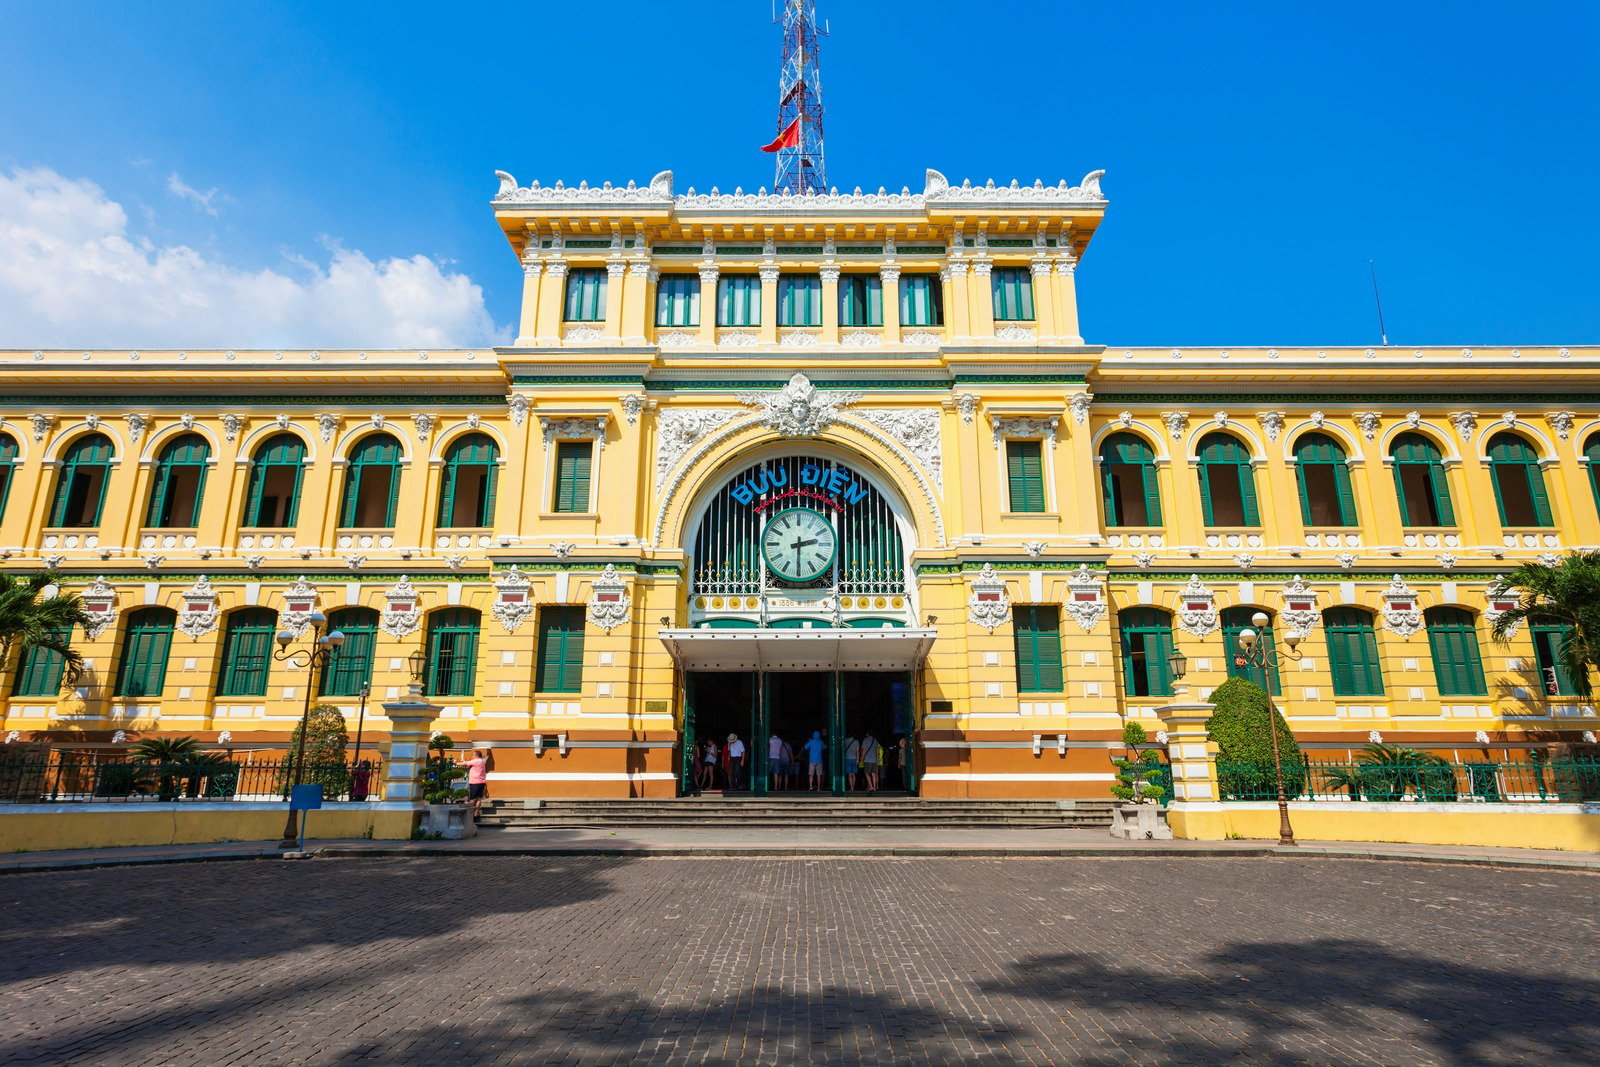 Bưu điện thành phố Hồ Chí Minh nổi bật ở trung tâm Quận 1